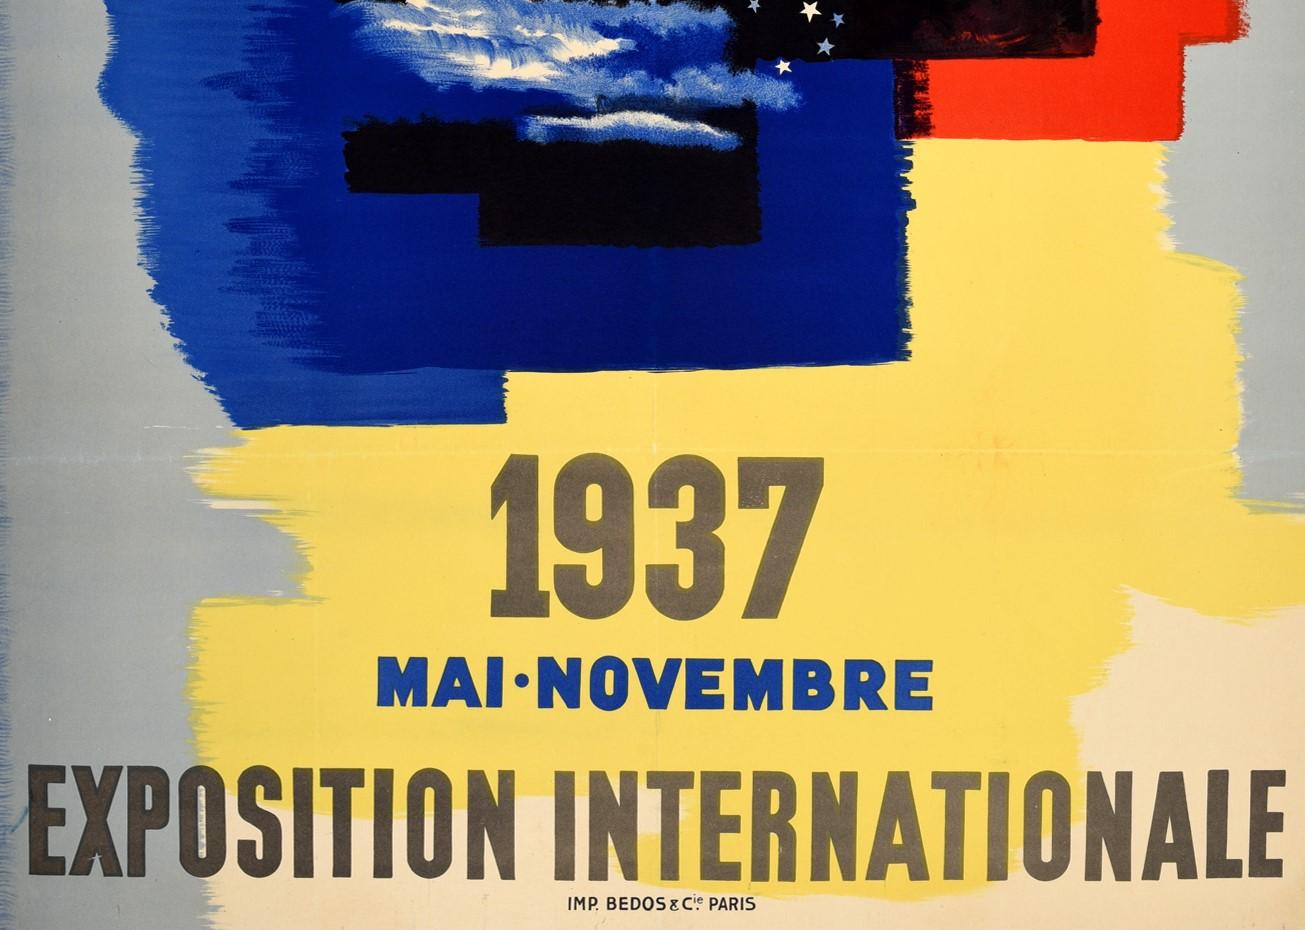 Original-Werbeplakat für die Internationale Ausstellung / Exposition Internationale 1937 in Paris mit einem großartigen Entwurf von Paul Colin (1892-1985):: der eine Dame mit wehendem Haar um eine Weltkugel mit blauen und weißen Sternen oben und